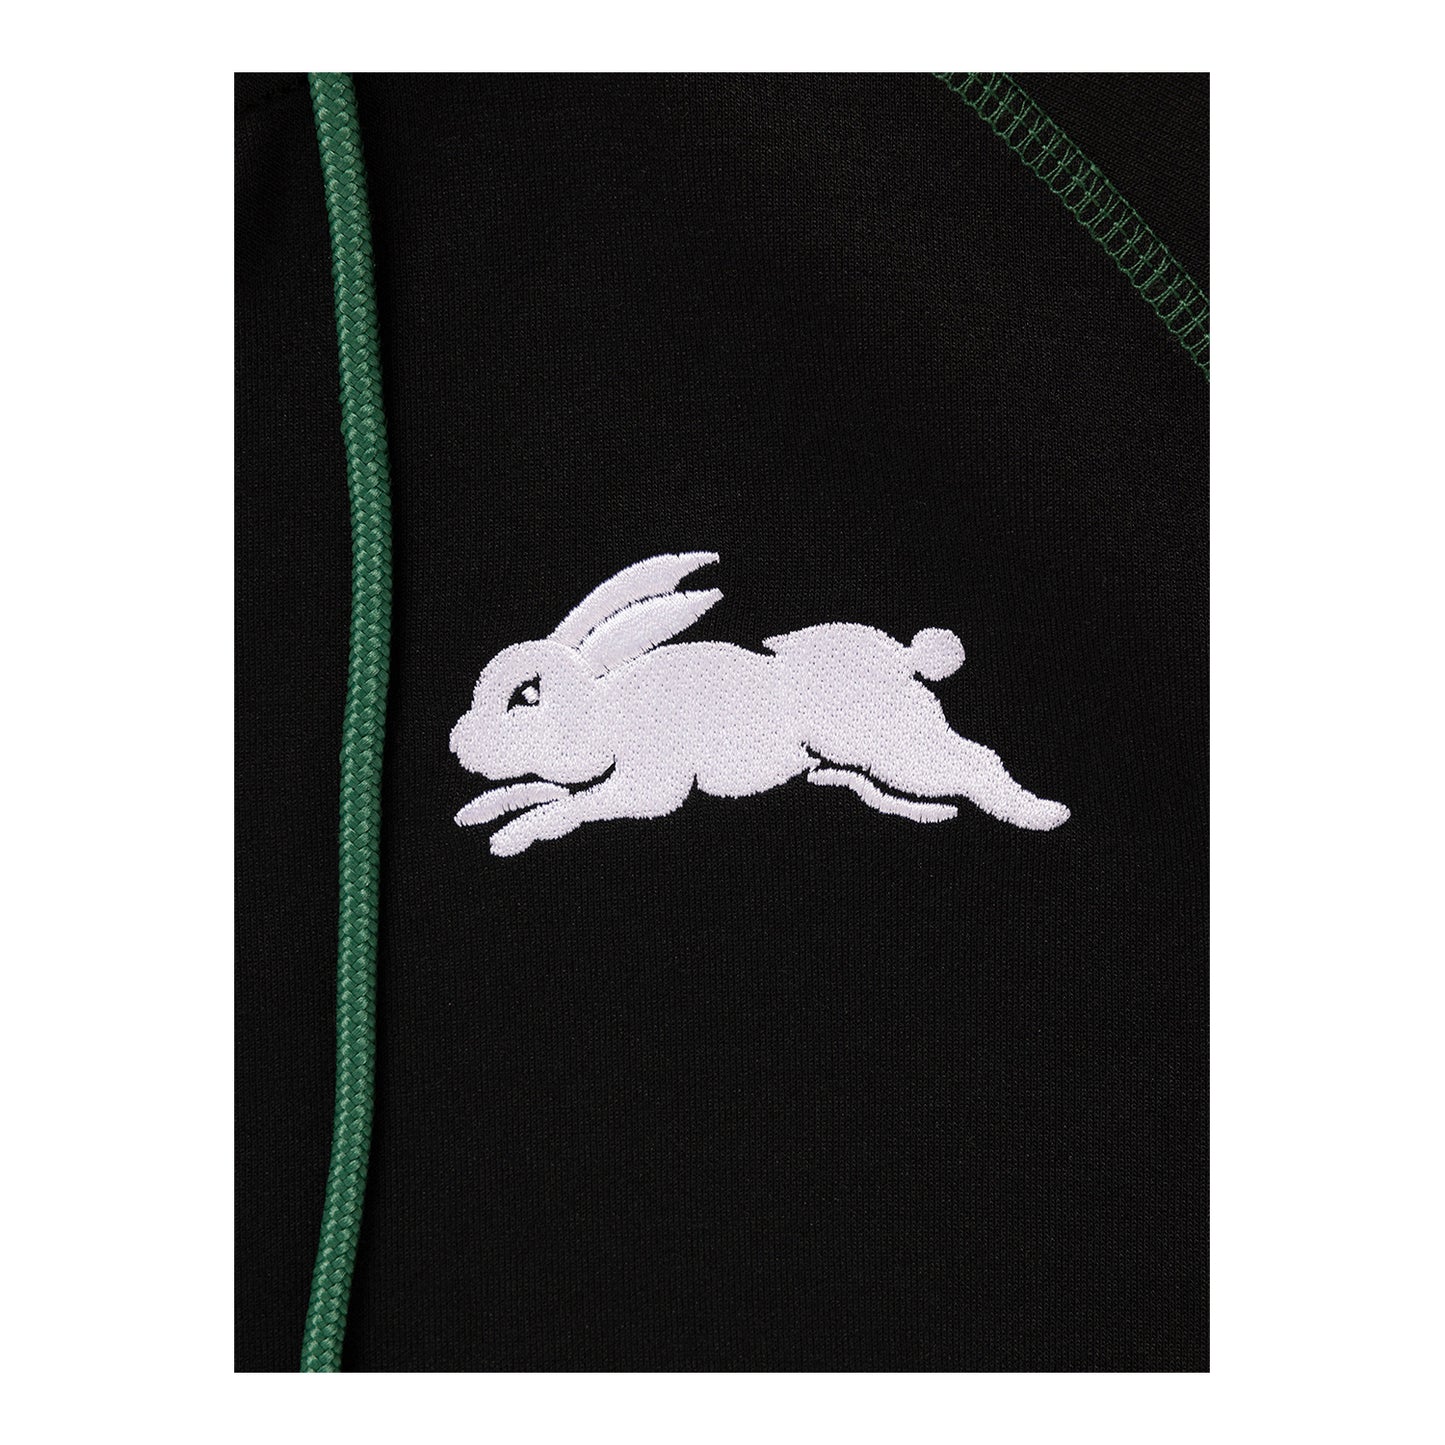 South Sydney Rabbitohs Mens Tech Fleece Jacket